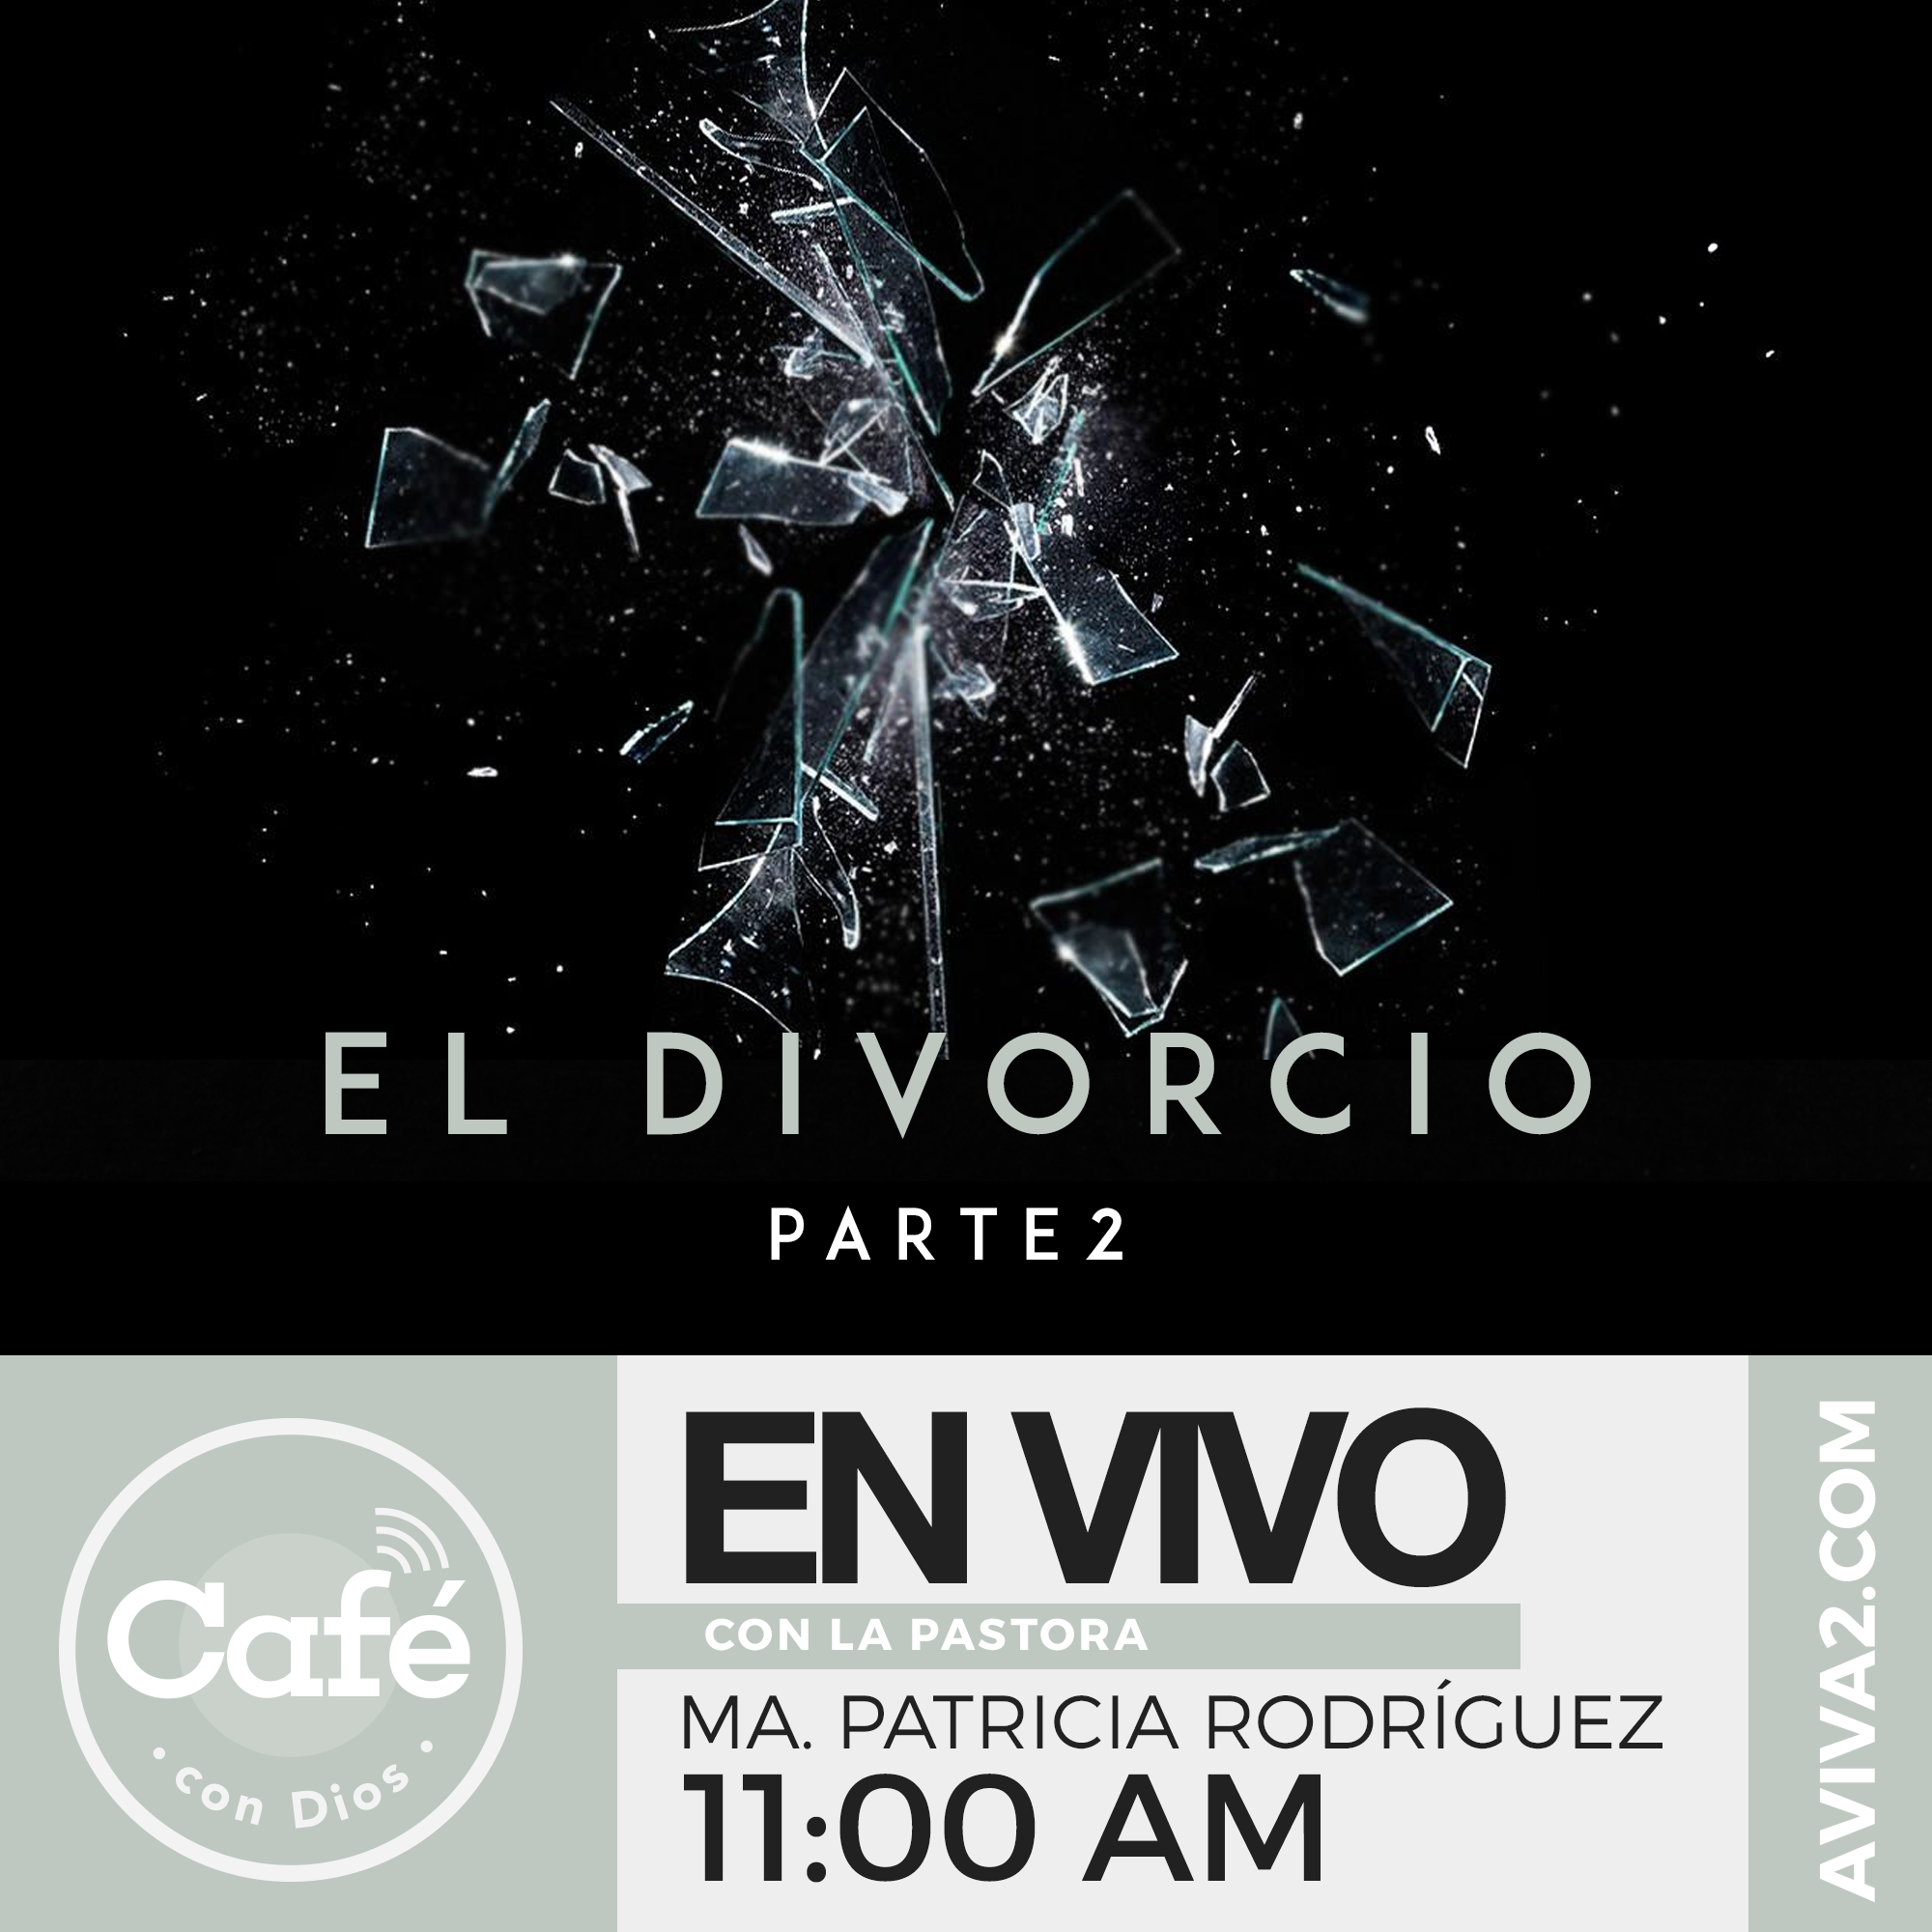 Café con Dios - El divorcio parte 2